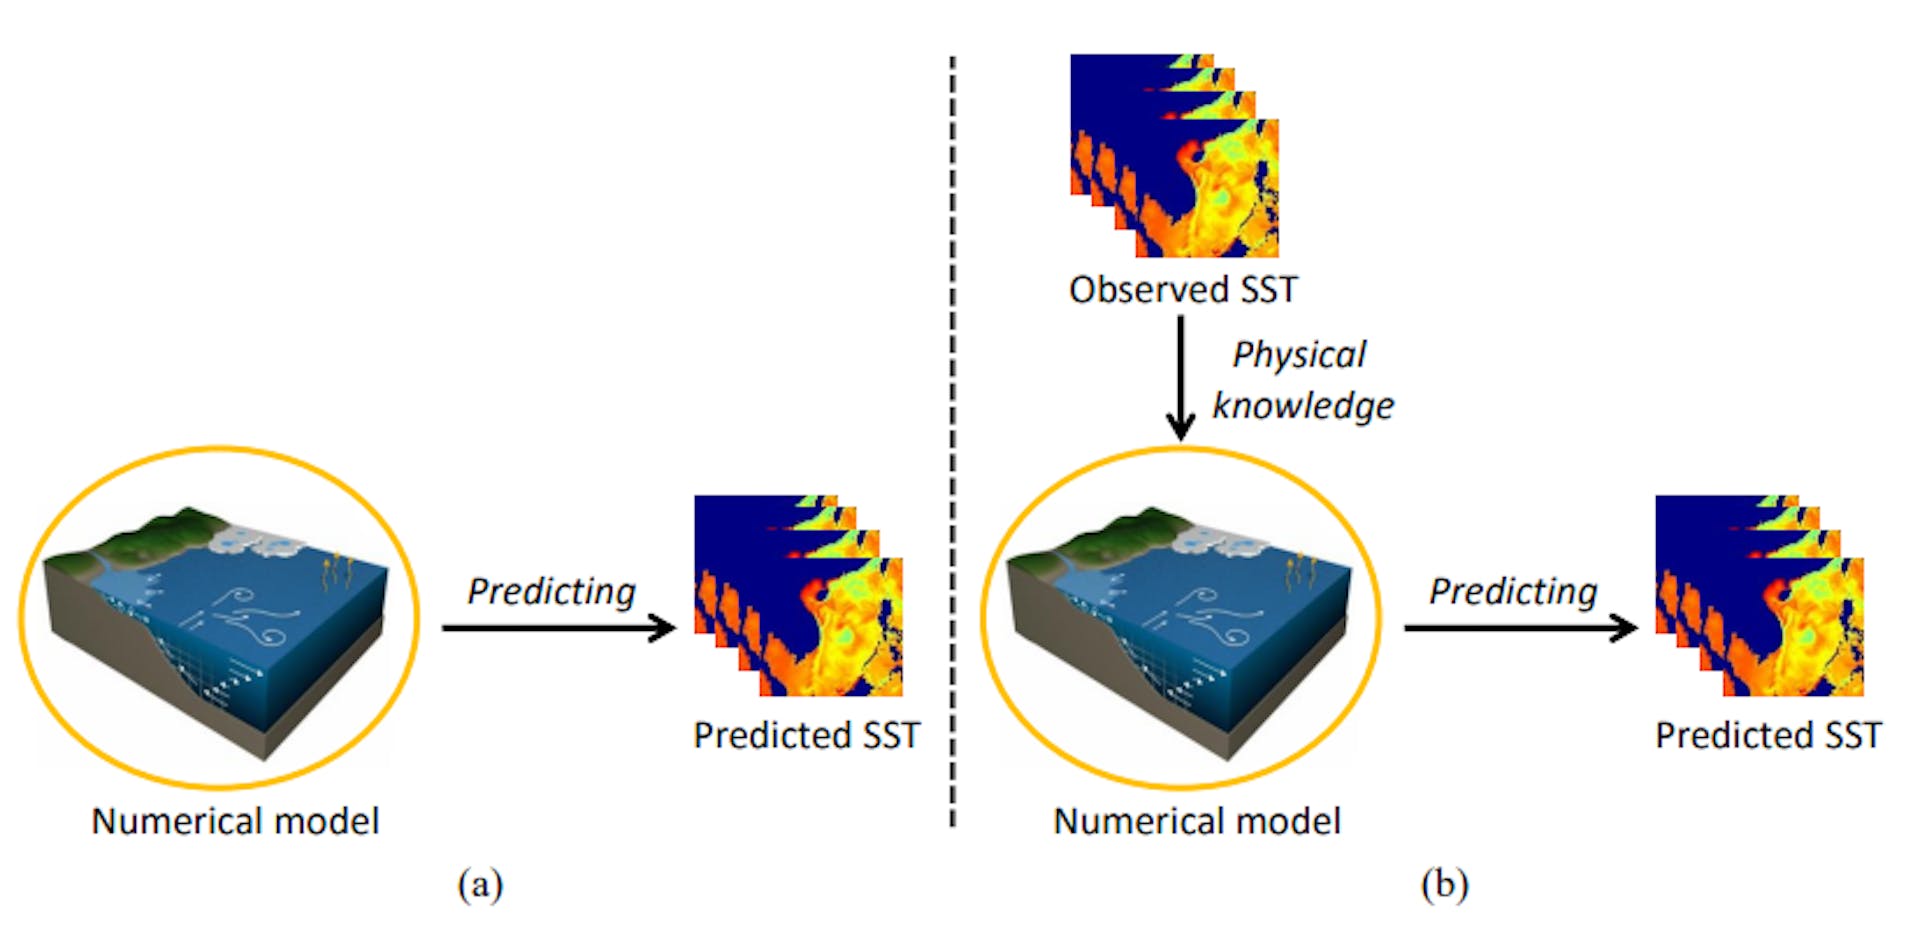 Hình 1. So sánh khái niệm giữa mô hình số và phương pháp đề xuất về dự báo nhiệt độ mặt nước biển (SST). (a) Mô hình số. (b) Đề xuất phương pháp dự đoán SST. Mạng đối thủ tổng hợp được sử dụng để chuyển kiến thức vật lý từ dữ liệu quan sát lịch sử sang mô hình số và do đó cải thiện hiệu suất dự đoán SST.